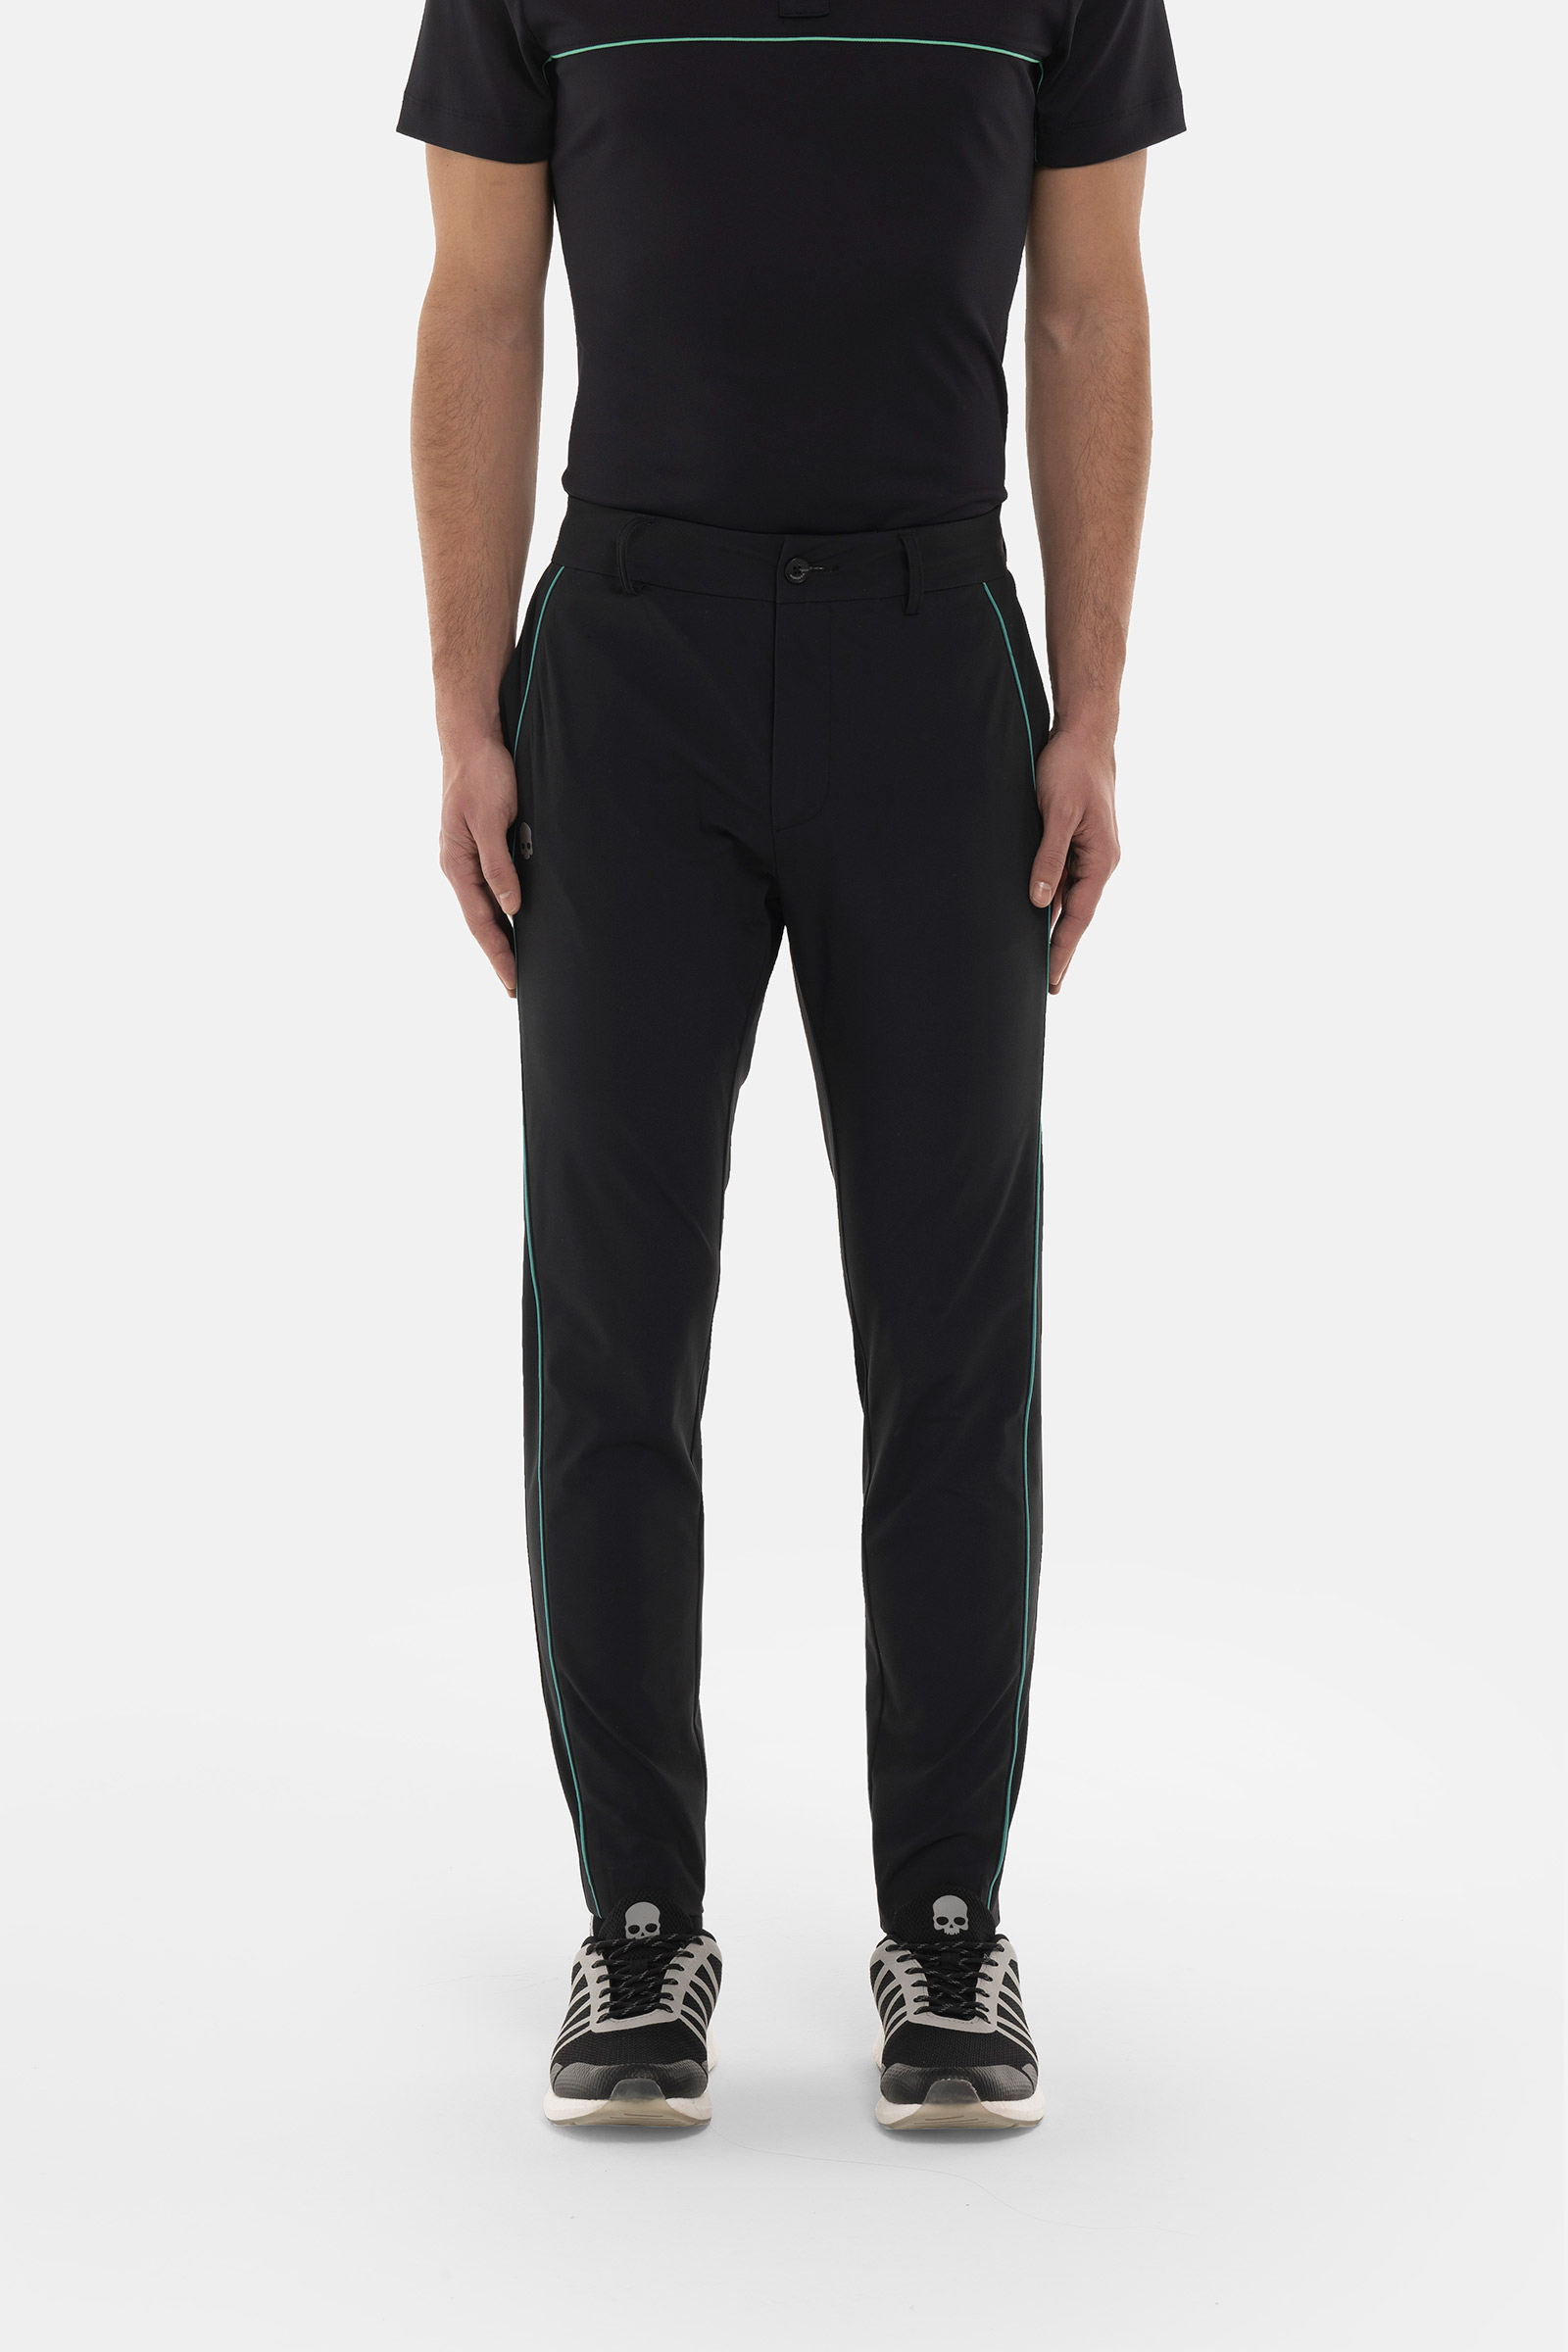 LINE TECH PANTS - Apparel - Hydrogen - Luxury Sportwear